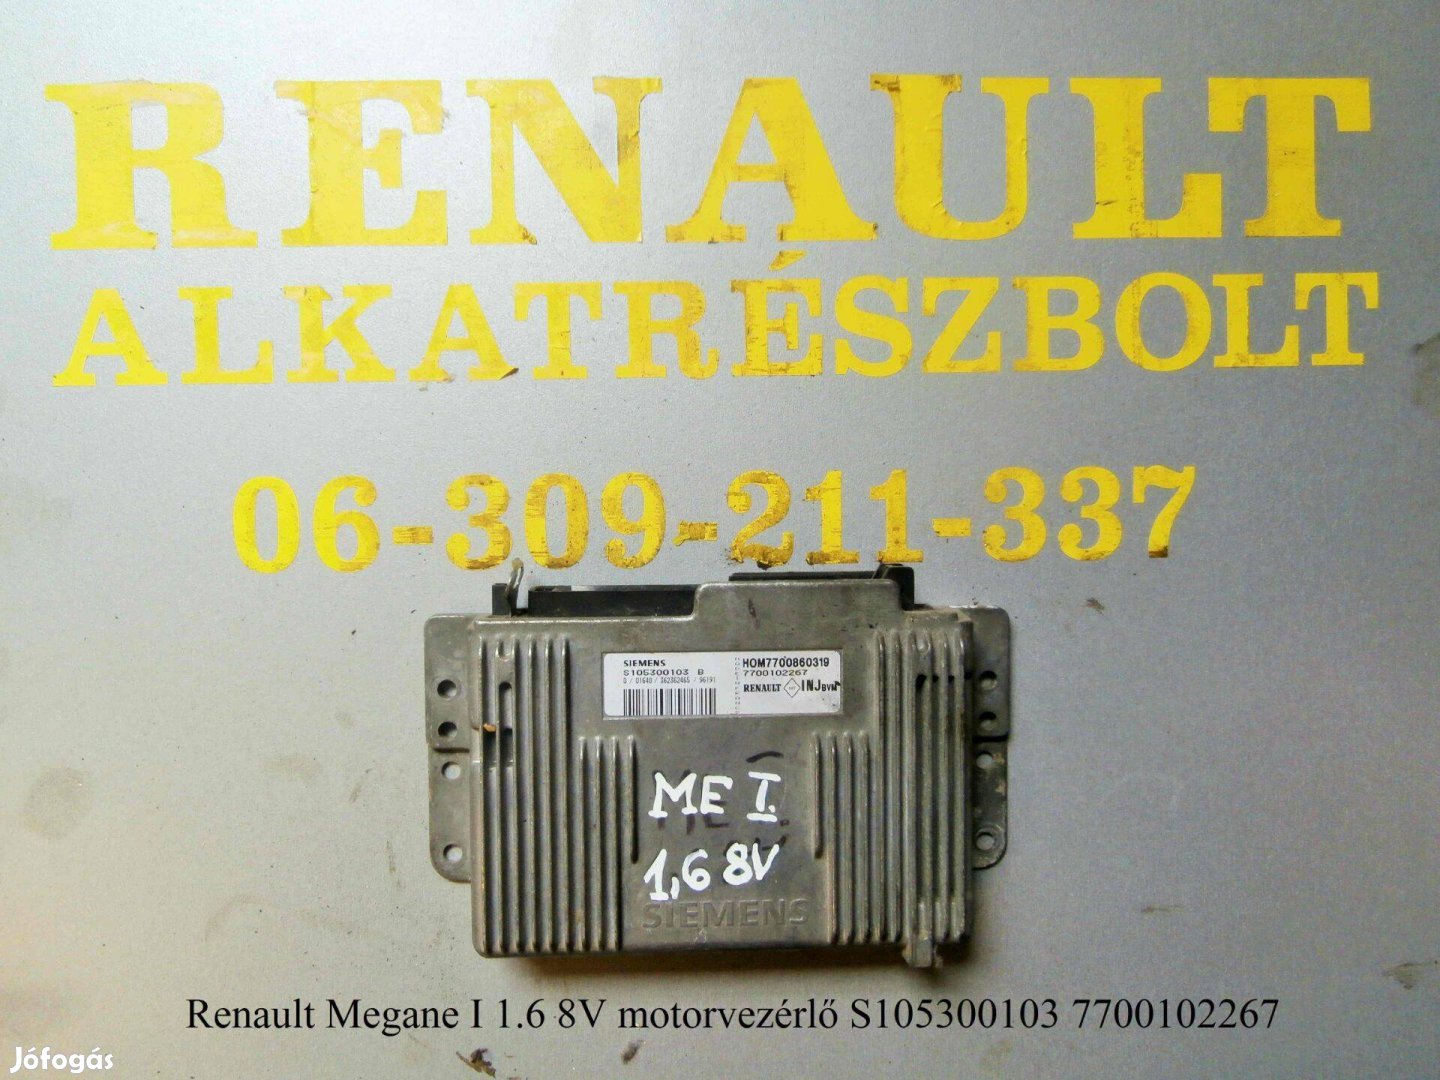 Renault Megane I 1.6 8V motorvezérlő S105300103 7700102267